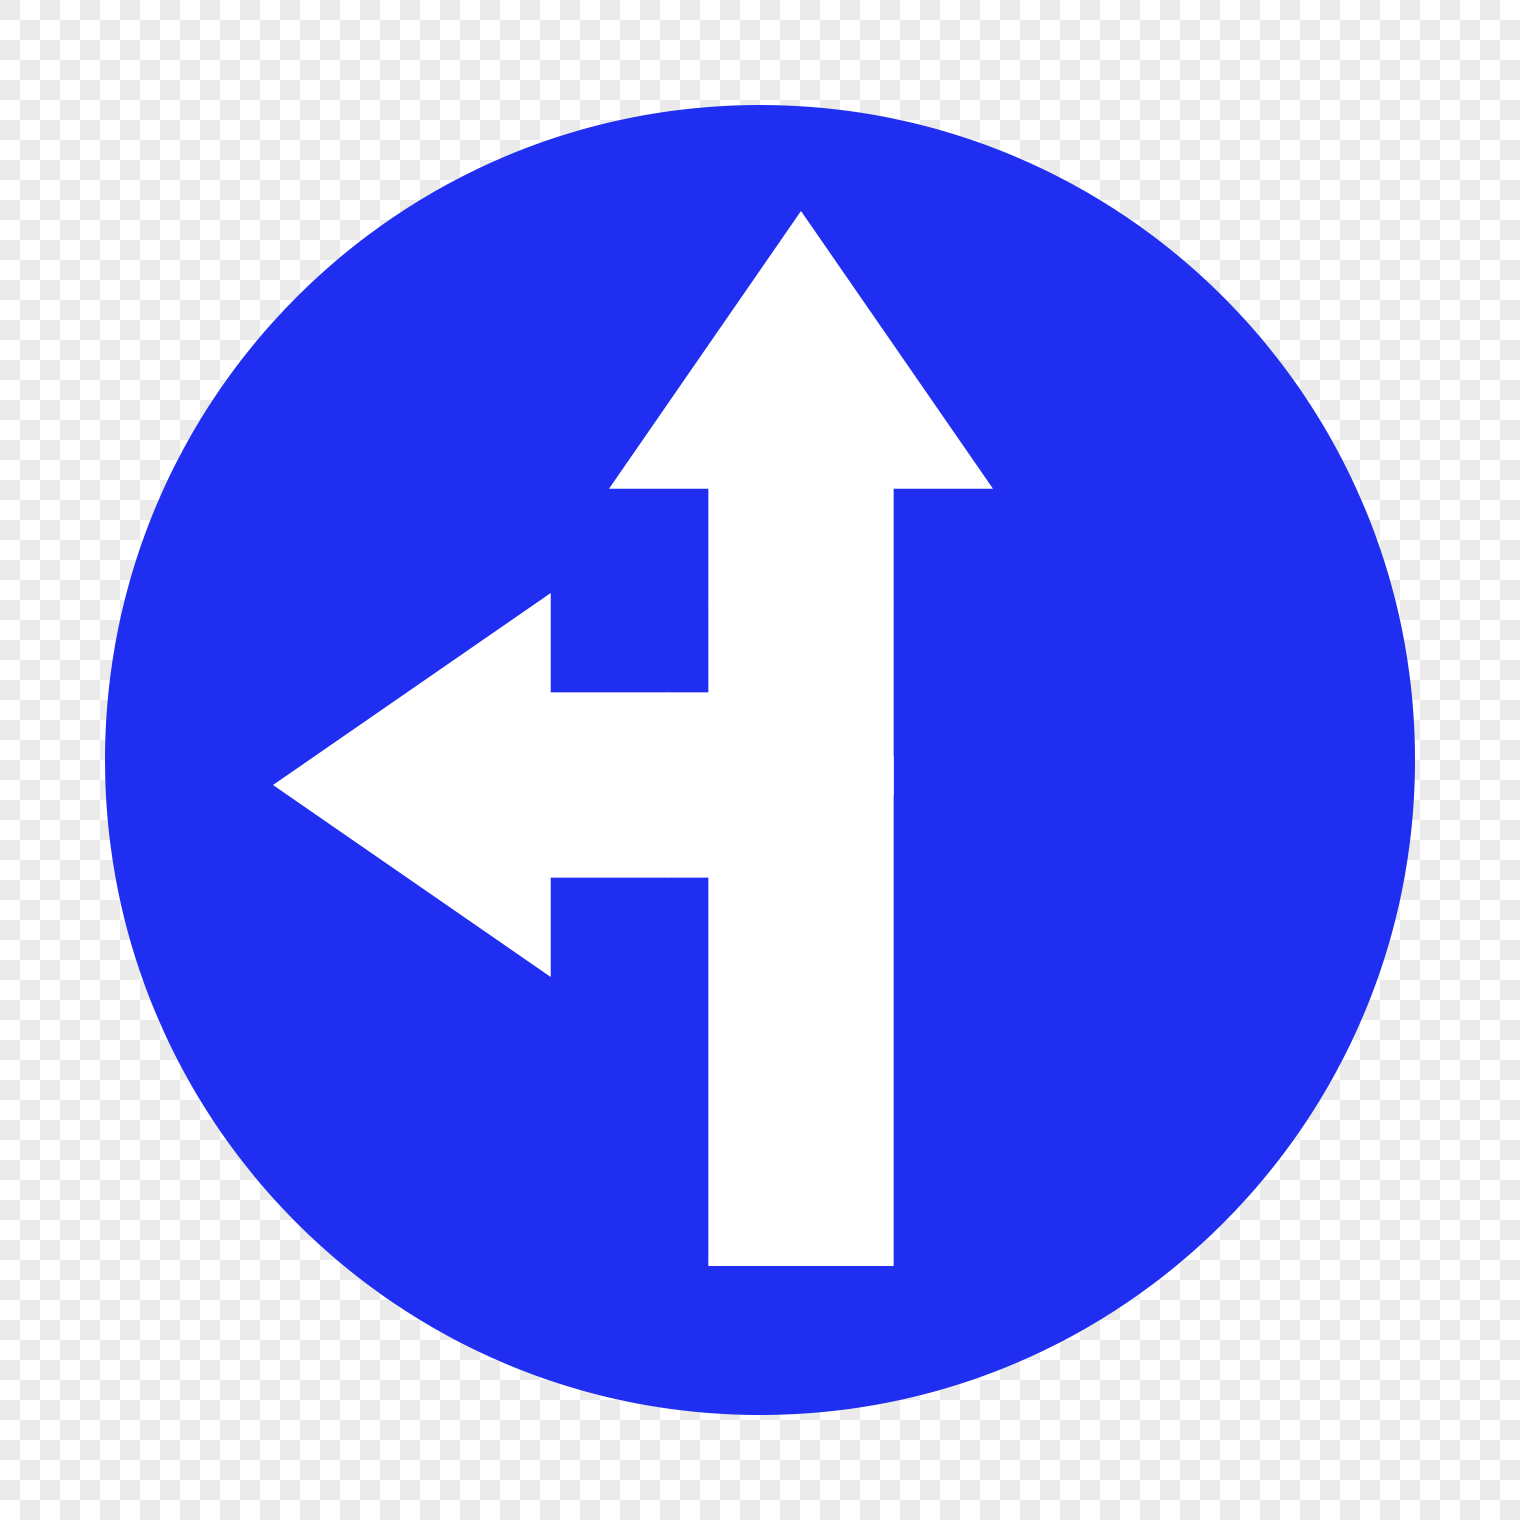 Go straight home. Знак прямо и налево. Дорожный знак прямо и налево. Дорожный знак движение прямо и налево. Знак движение прямо и направо.